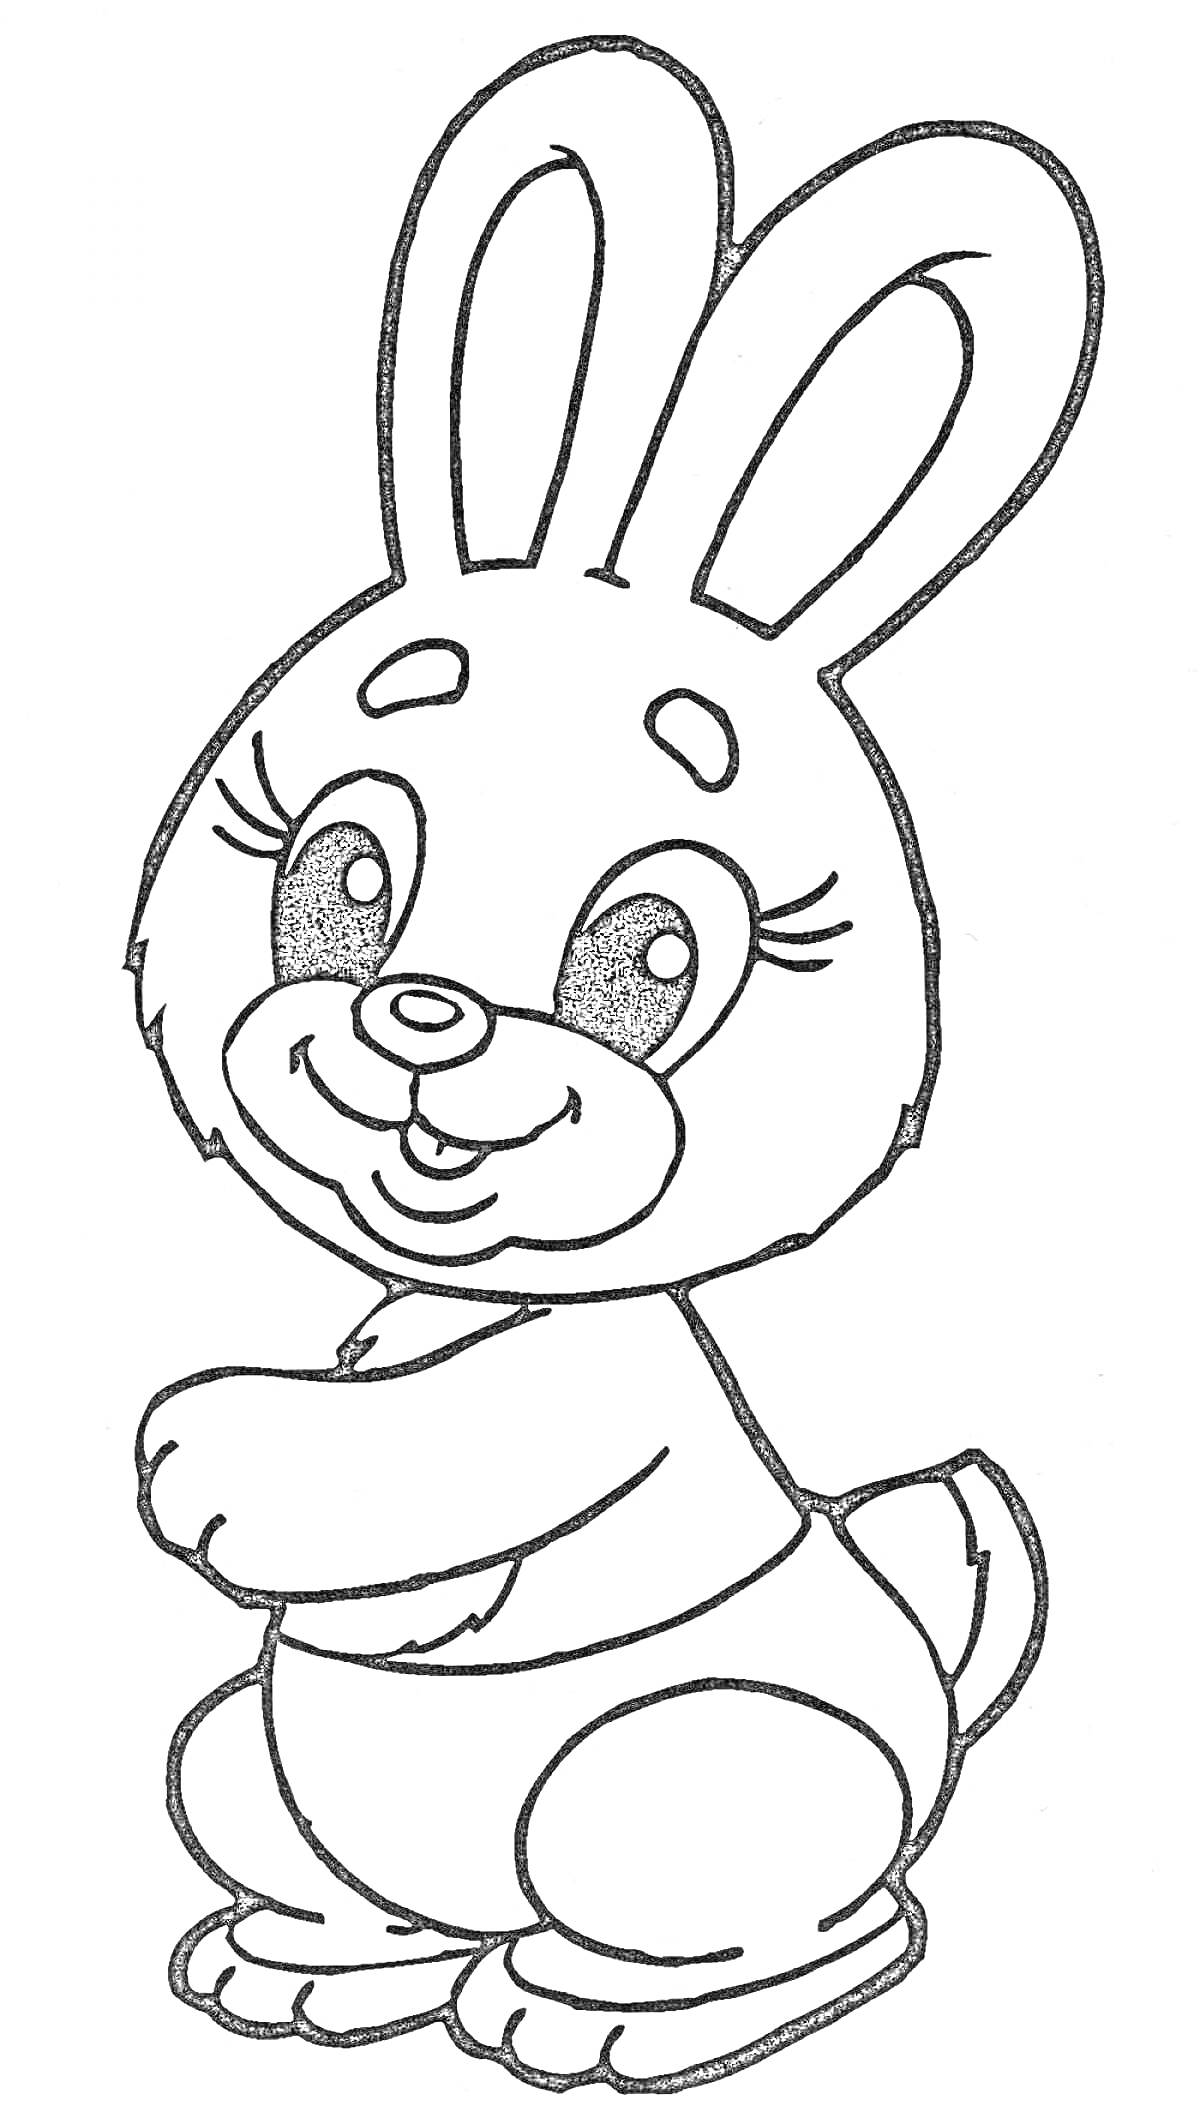 Раскраска Улыбающийся заяц с длинными ушами, сидящий на задних лапках